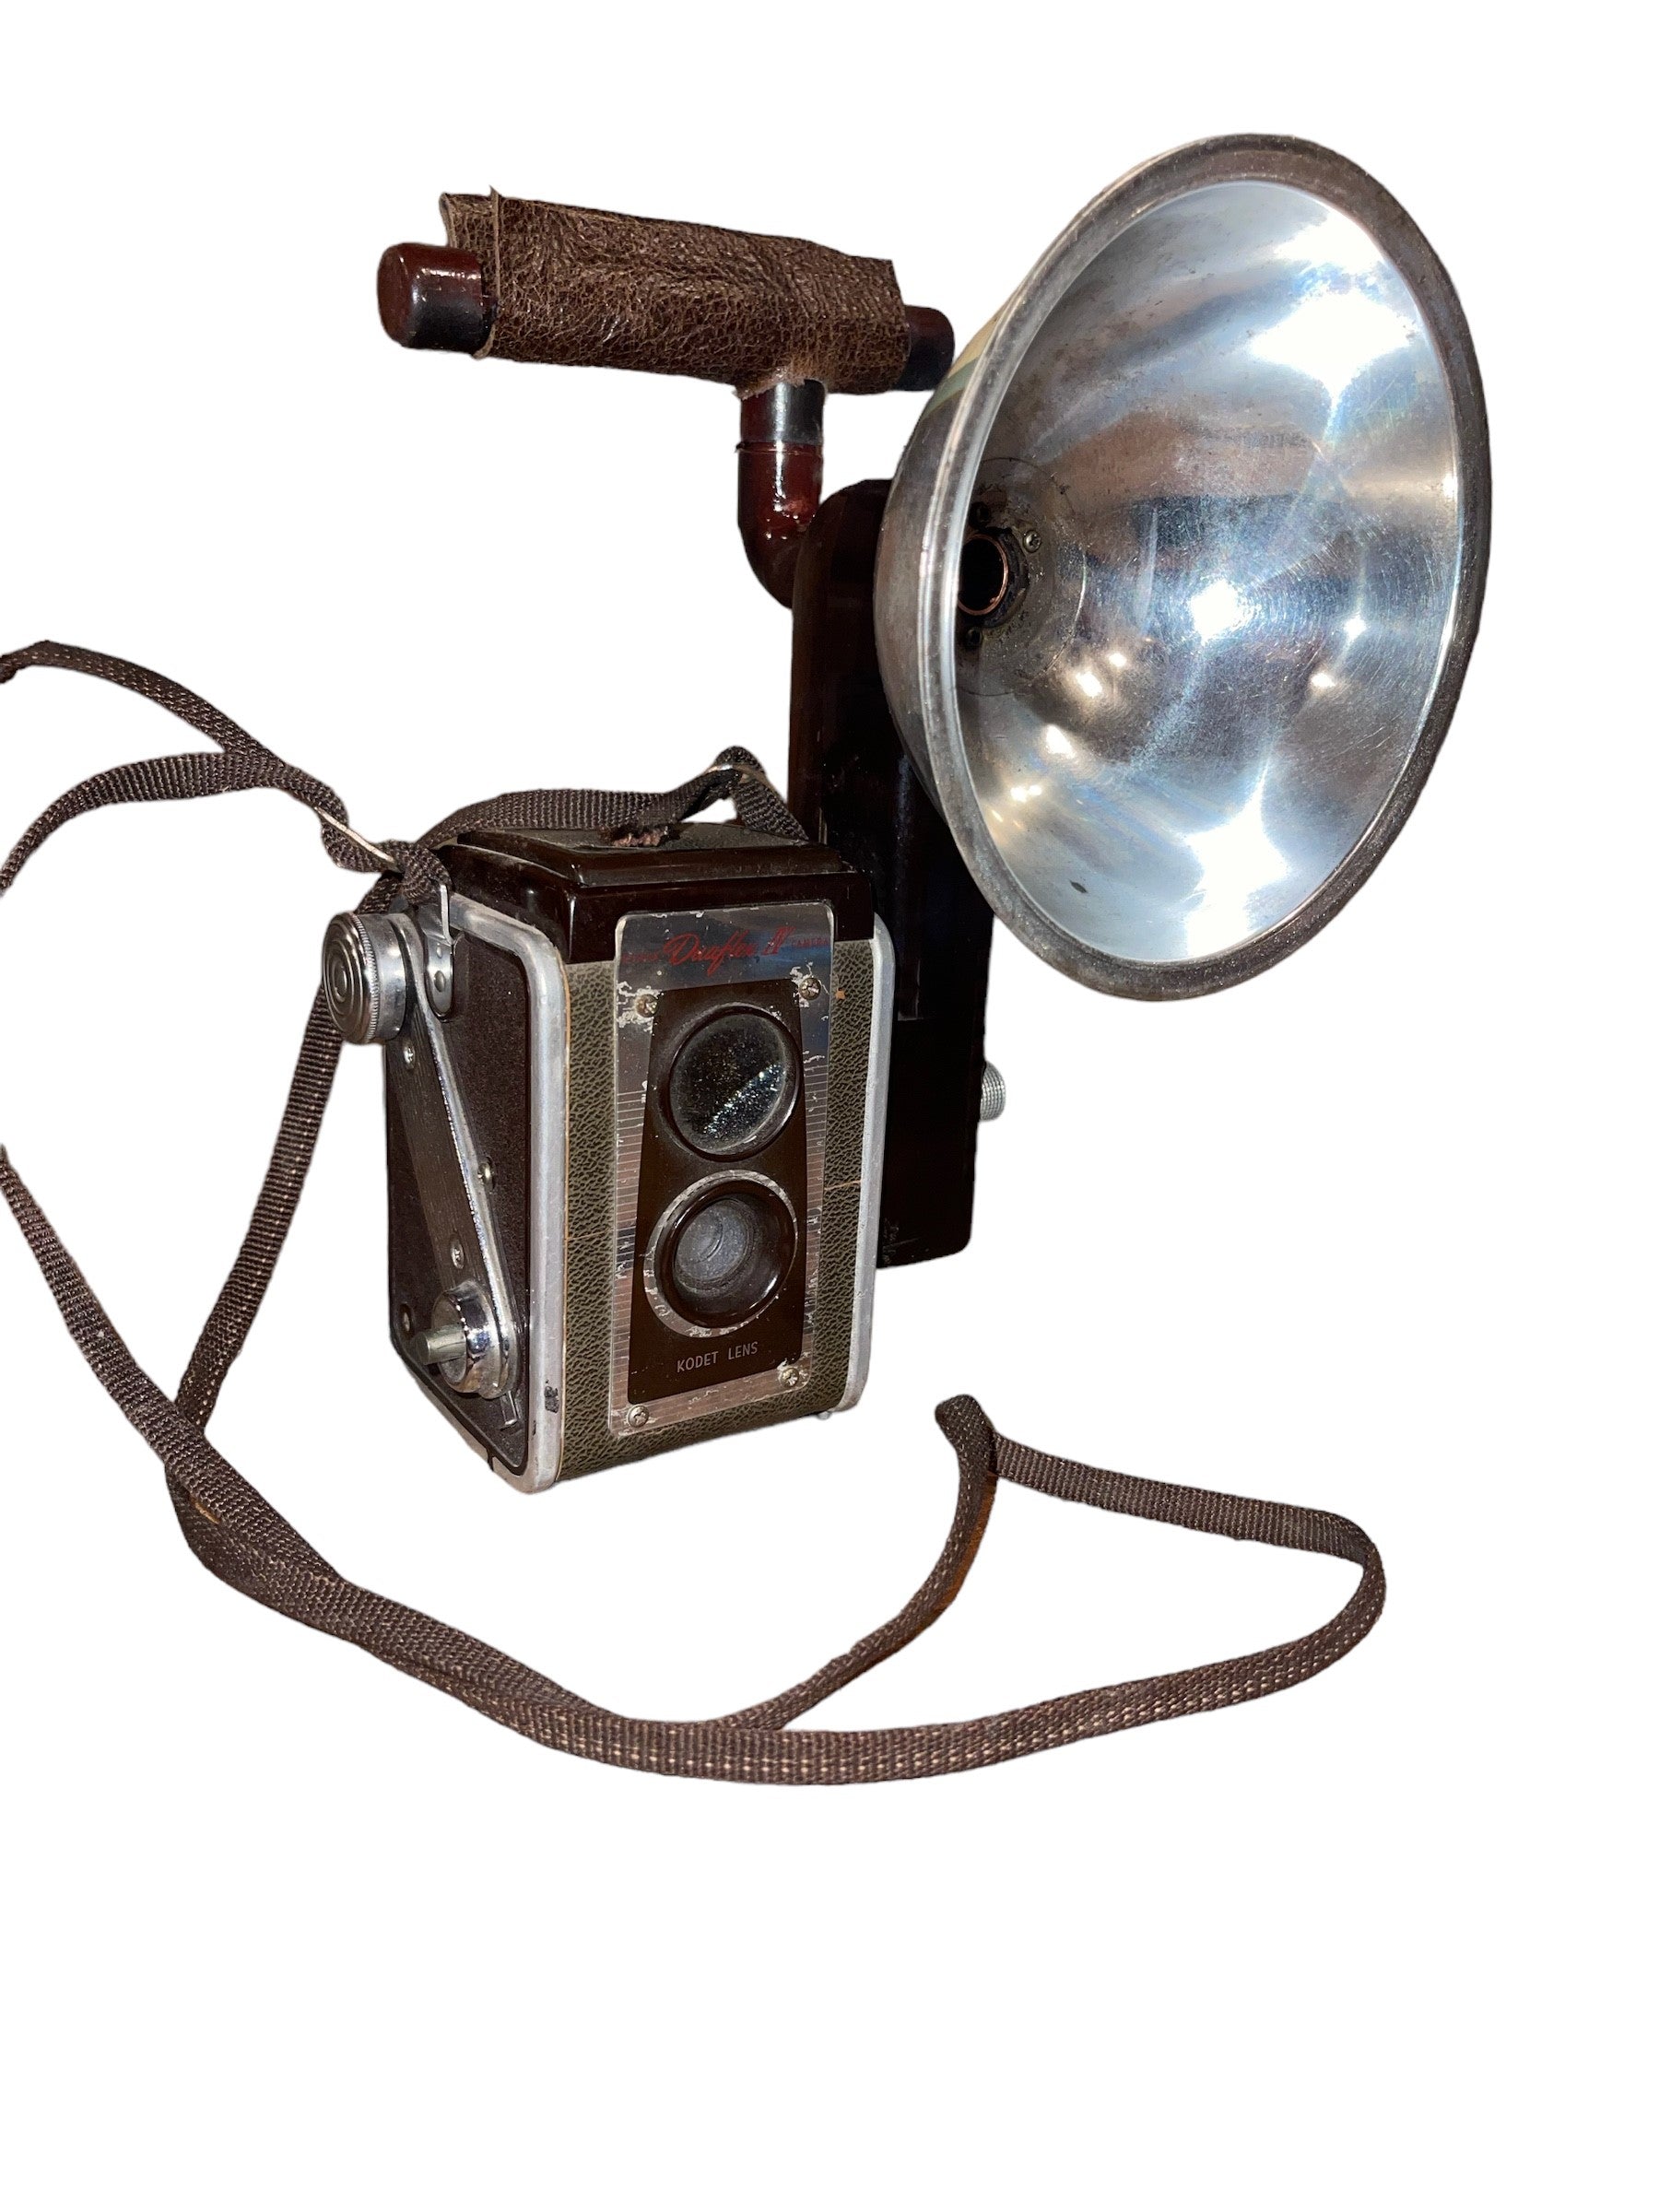 Kodak Brown Duaflex